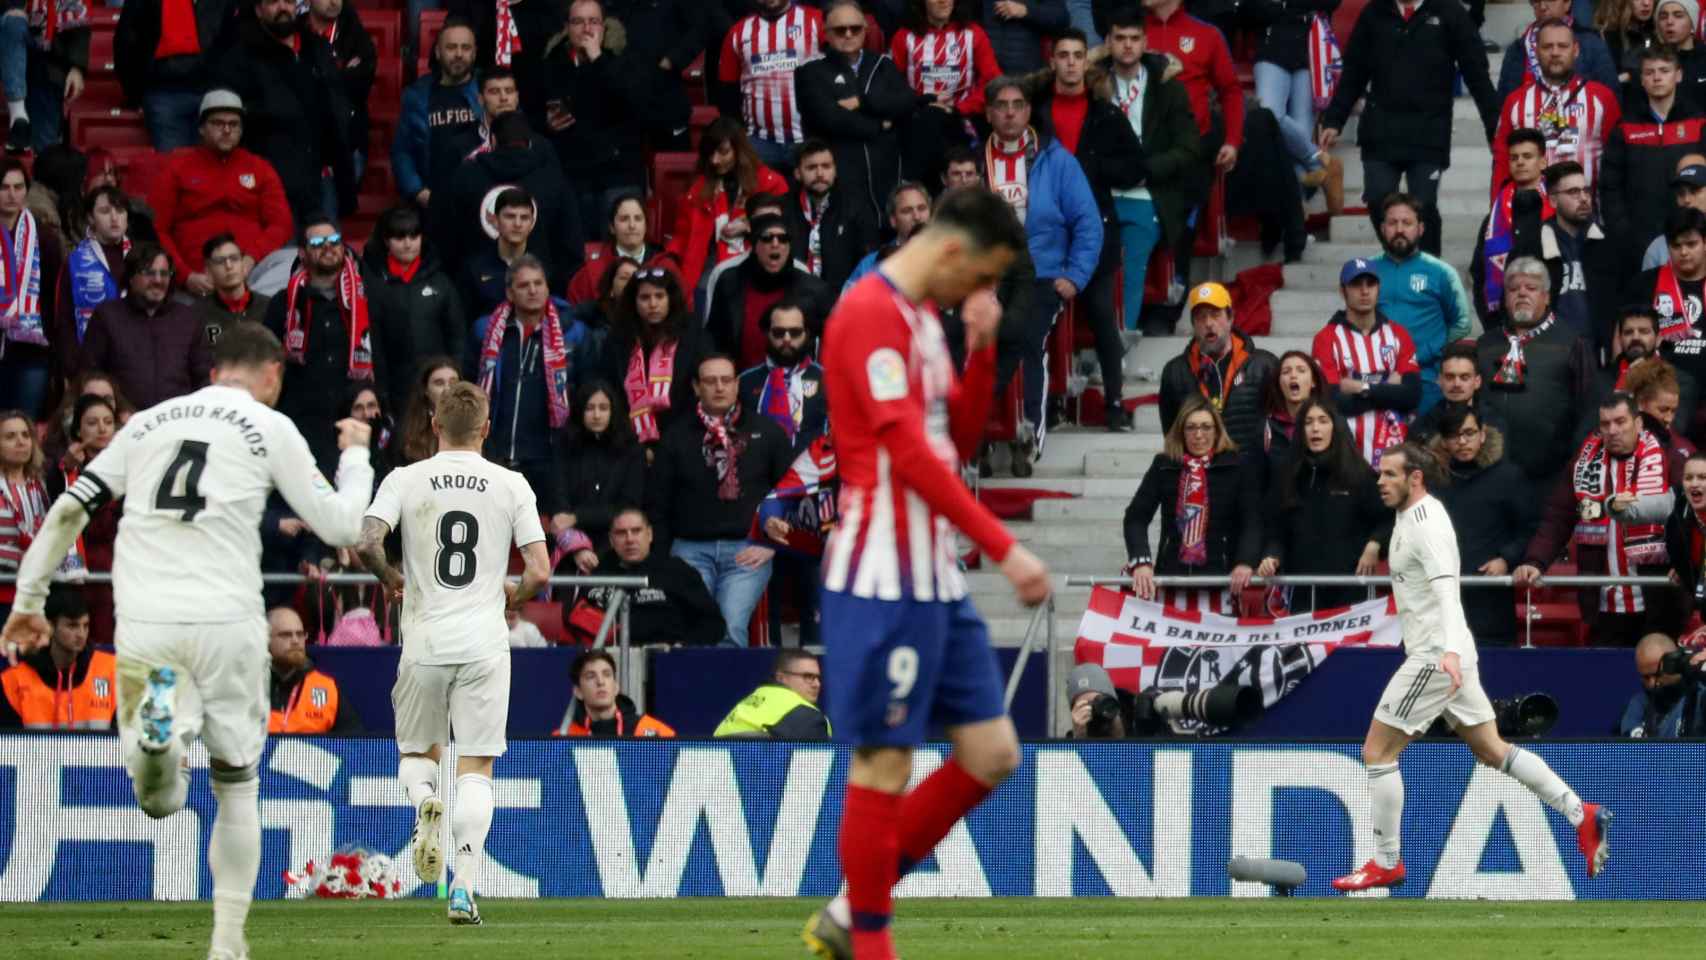 Gareth Bale celebra su gol en el derbi